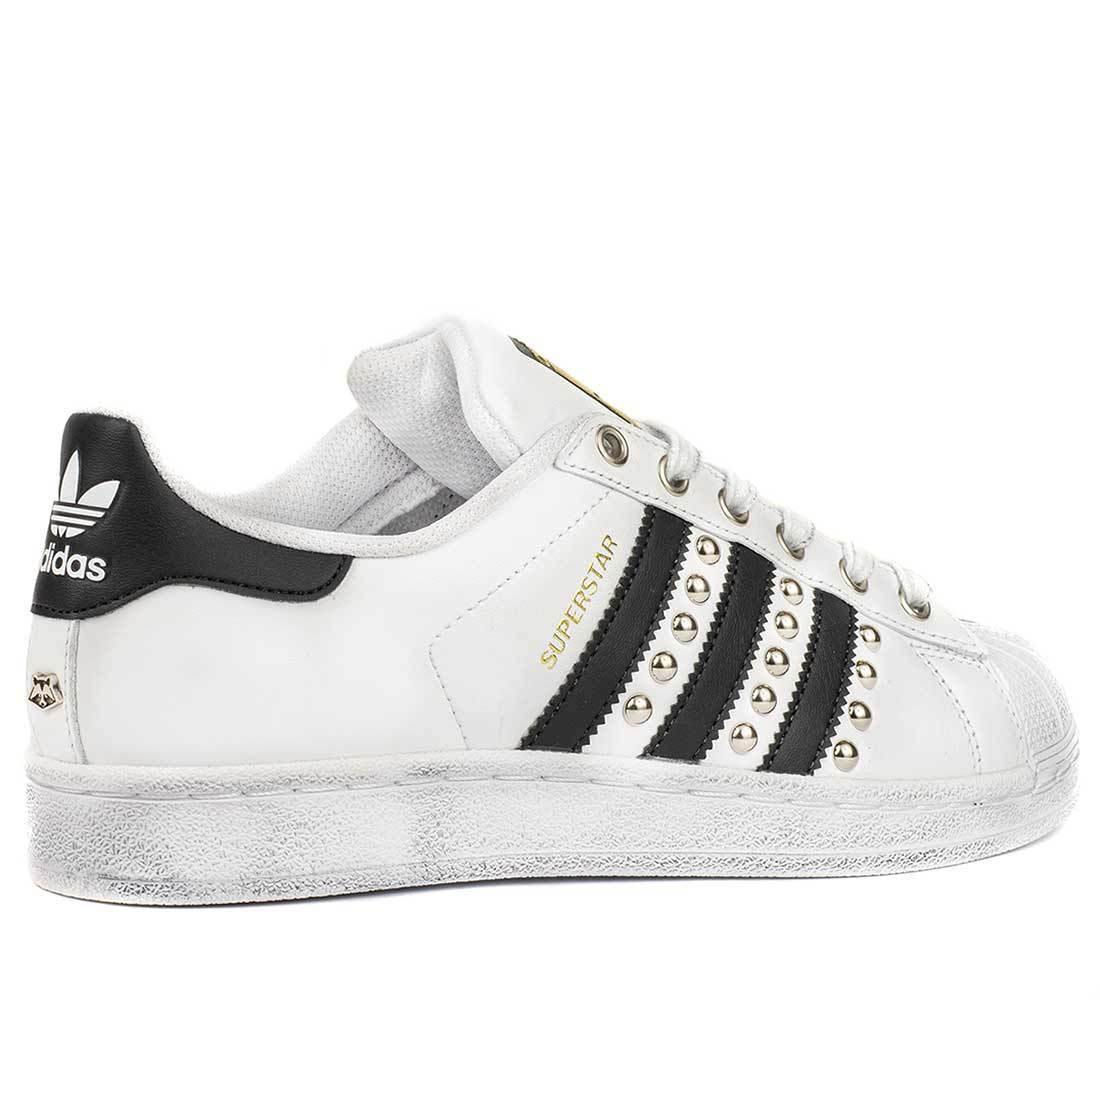 Sneakers Adidas modello Superstar bianche strisce nere personalizzate con borchie da Racoon-LAB 